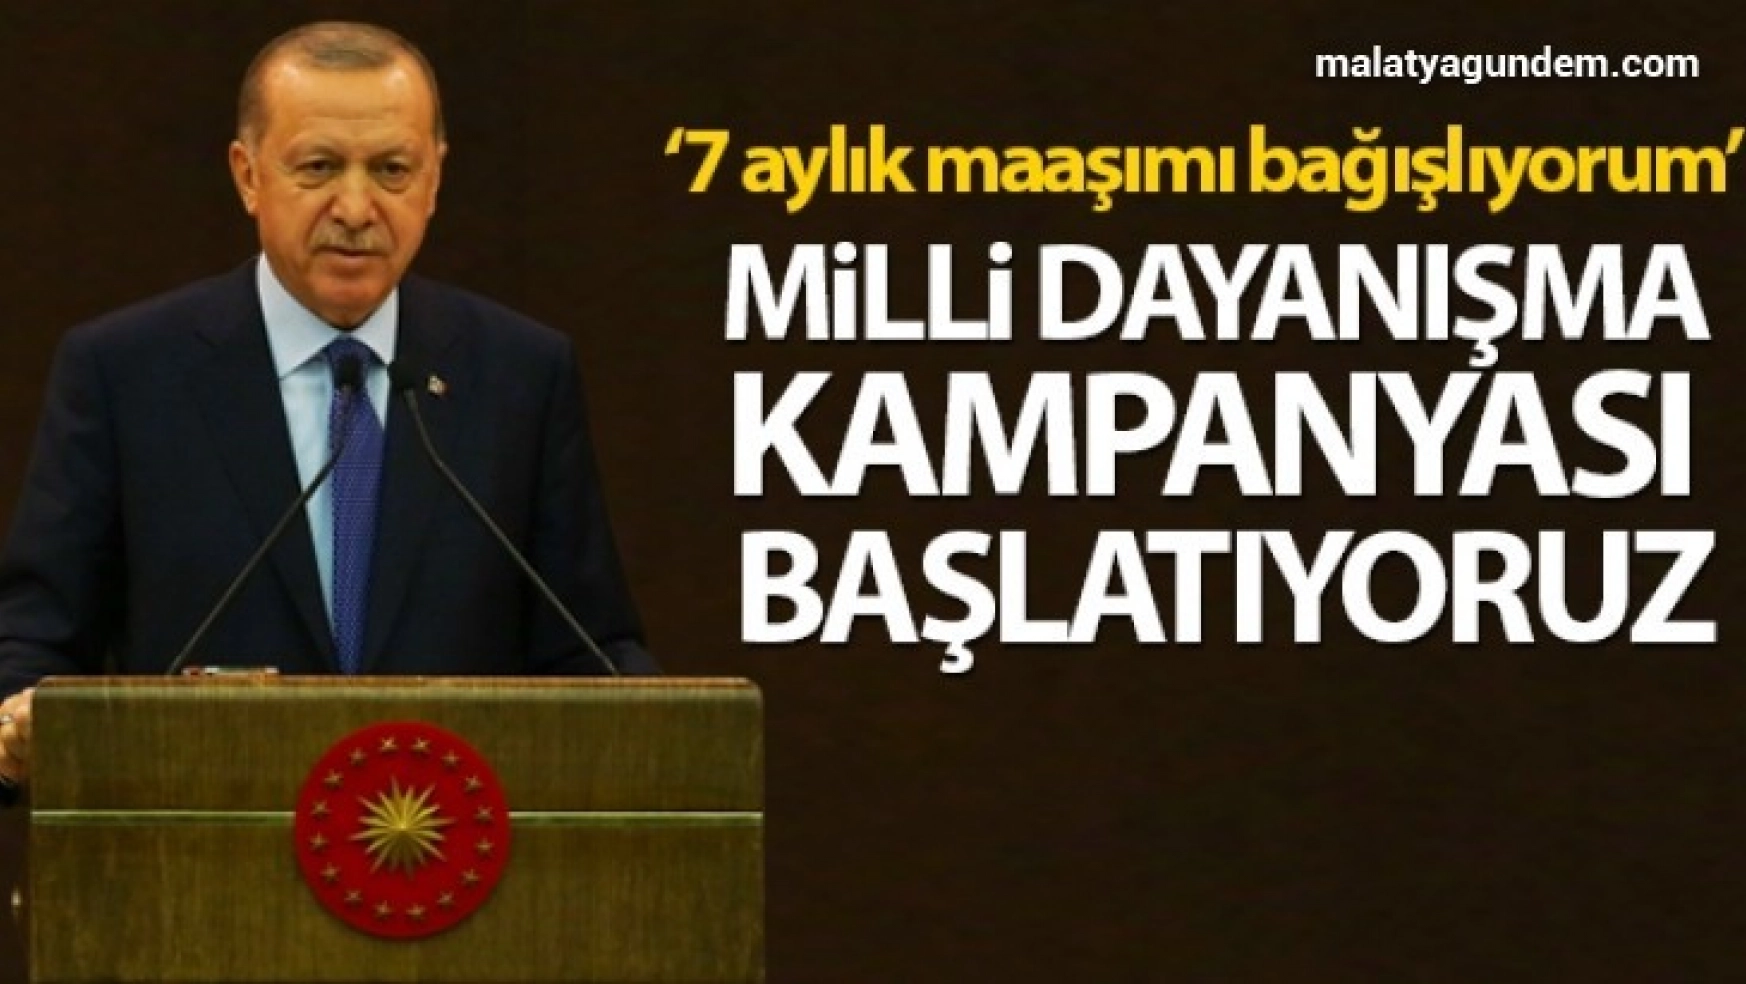 Erdoğan Milli dayanışma kampanyası başlatıyoruz